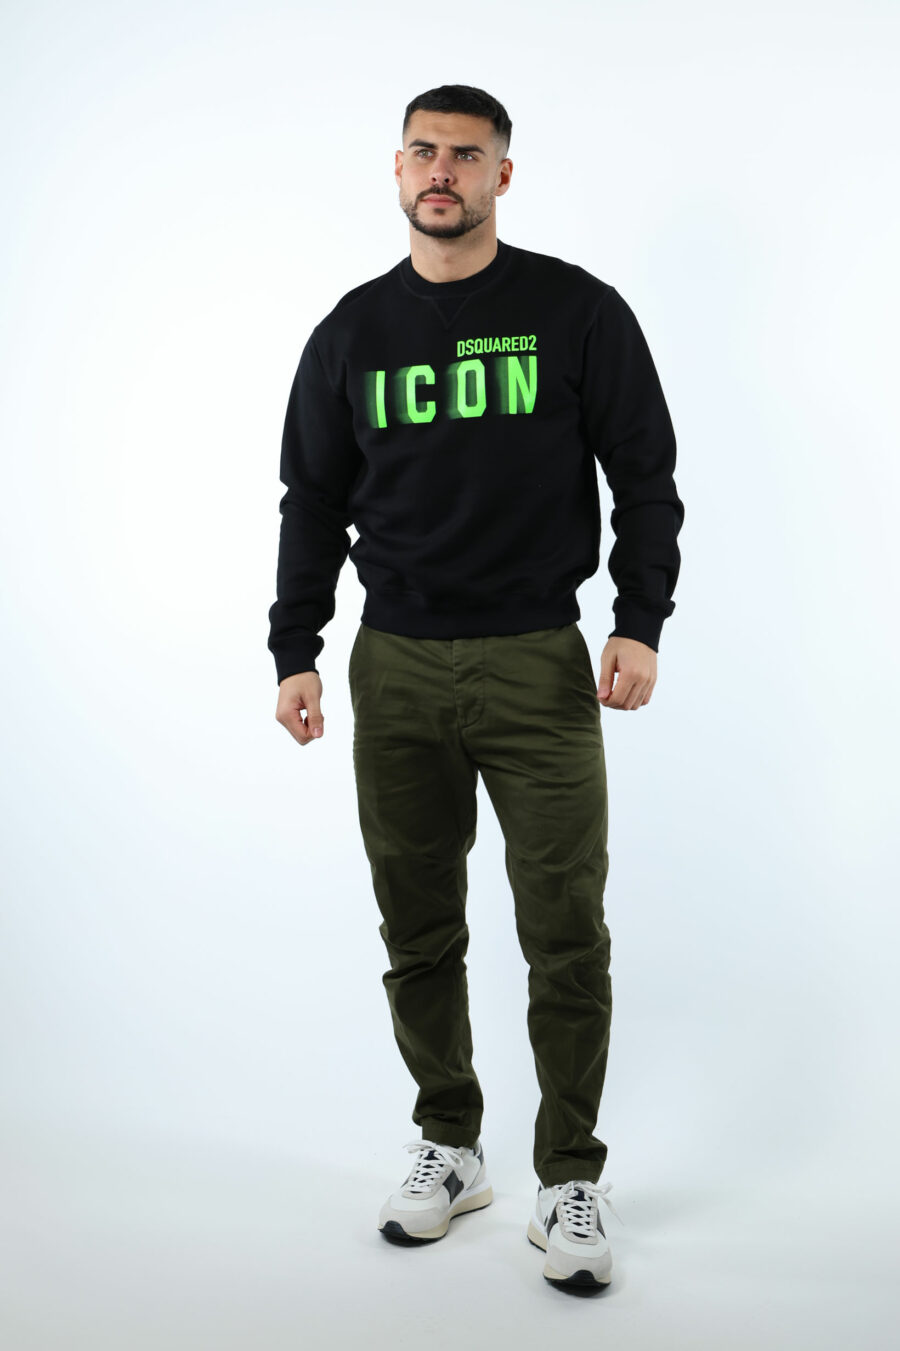 Schwarzes Sweatshirt mit "Icon" Maxilogo neongrün verwischt - 107061